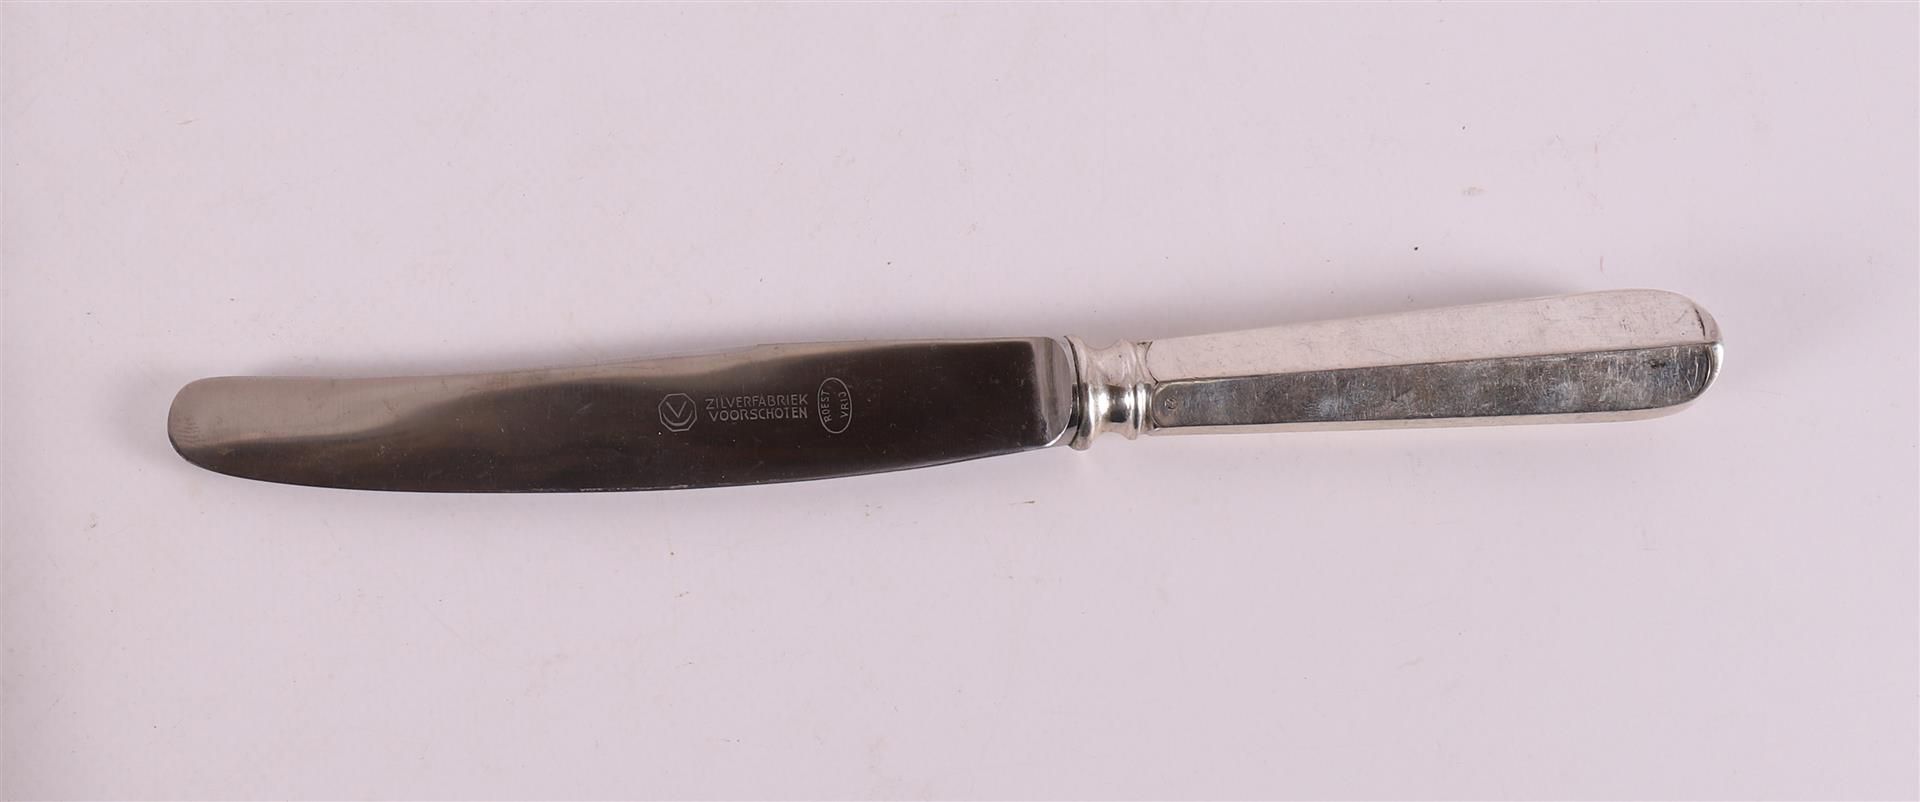 A set of six knives on silver handles, Haags Lof, Voorschoten, 1938 - Bild 2 aus 2